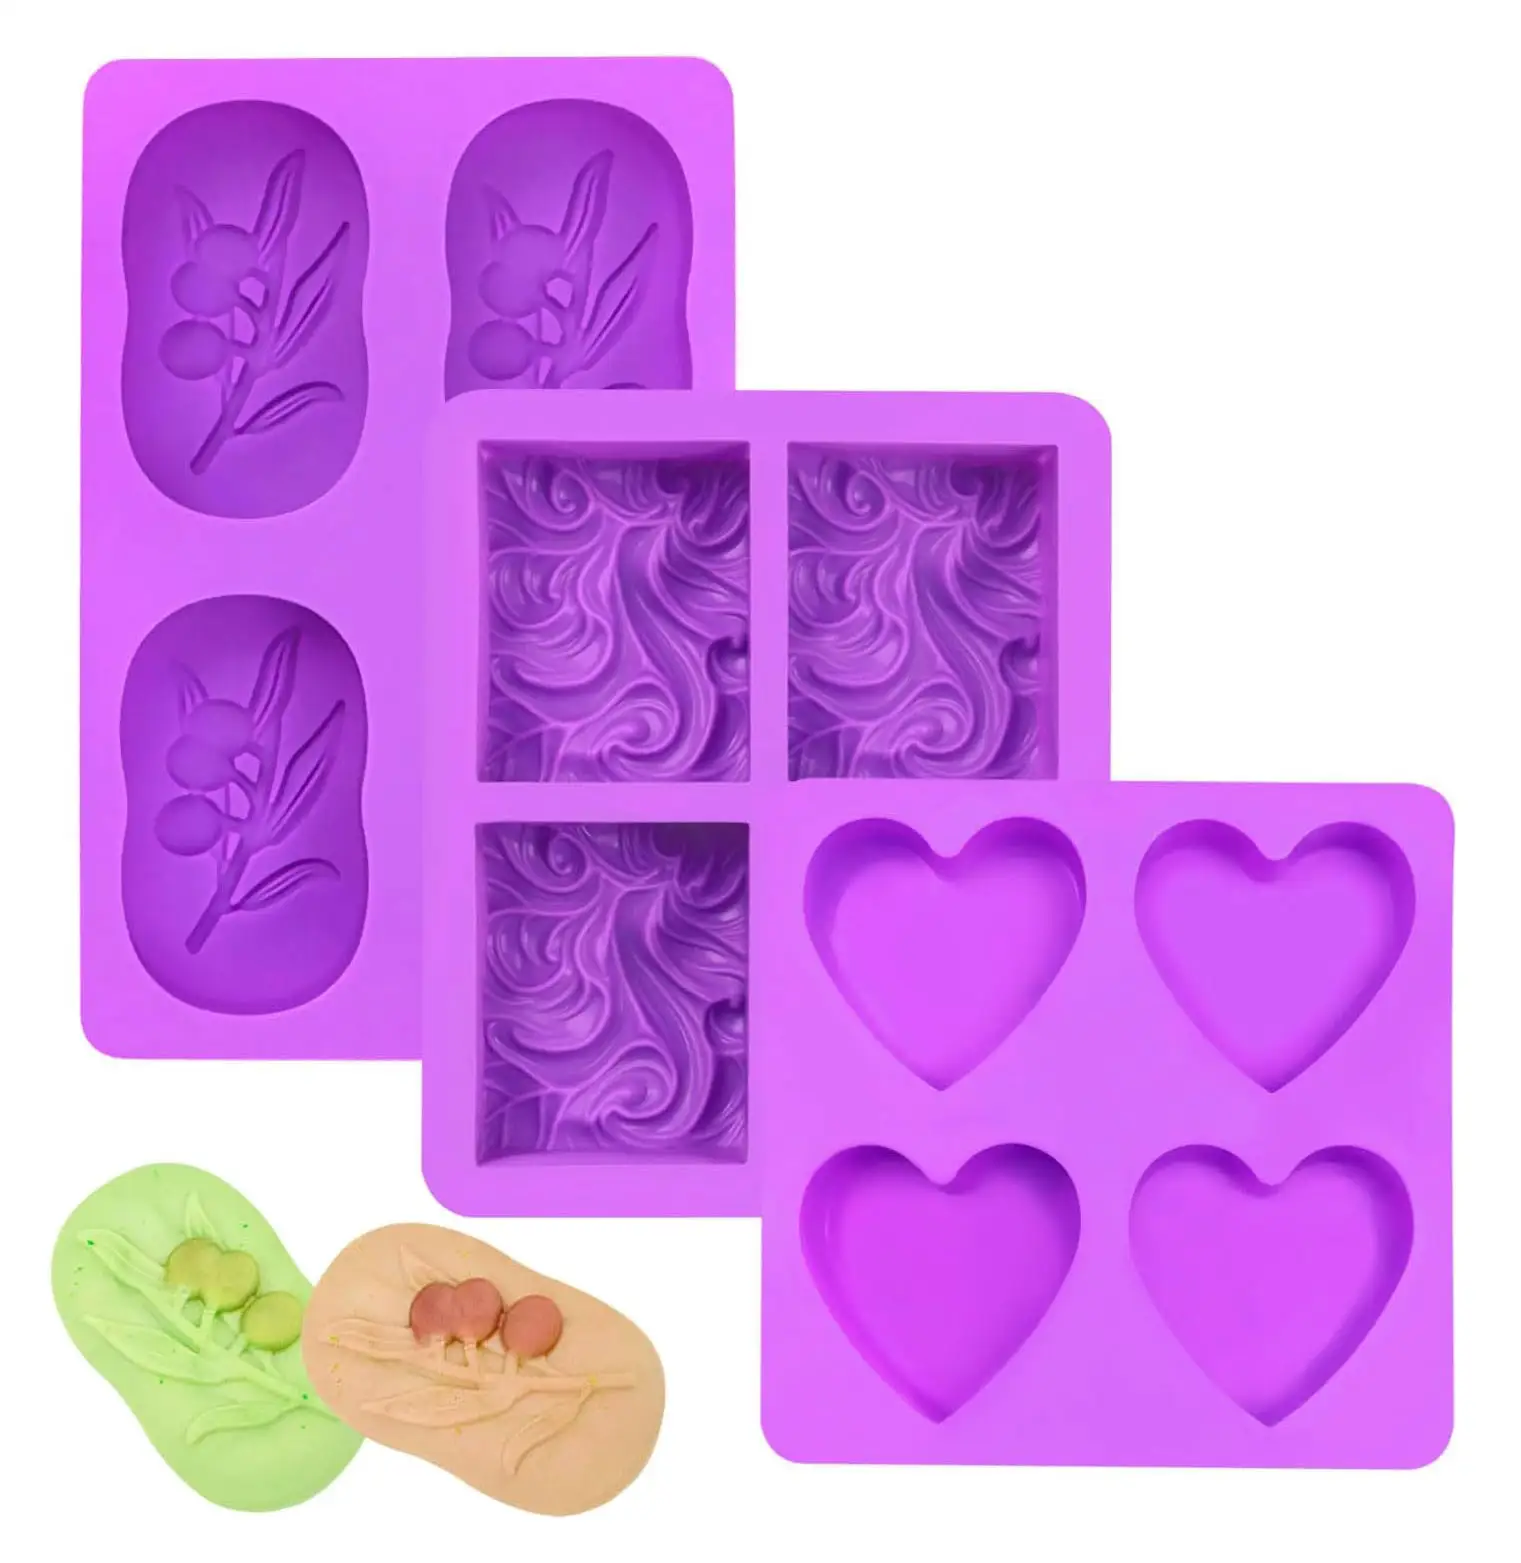 Moldes de barra de jabón Ocean Wave, moldes de jabón con formas de flores y corazones para hacer jabón hecho a mano